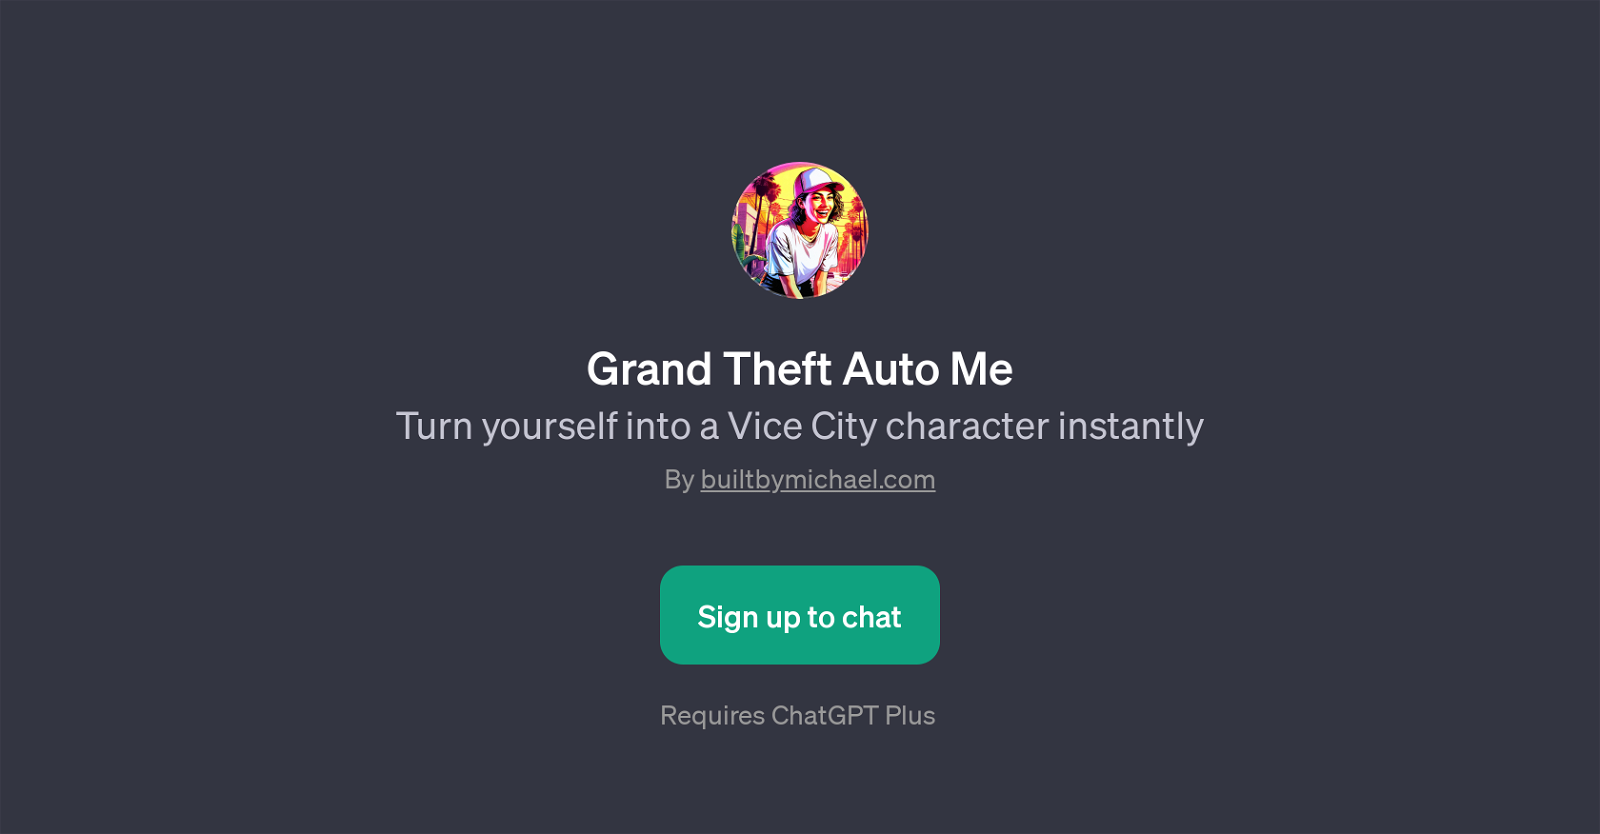 Grand Theft Auto Me website